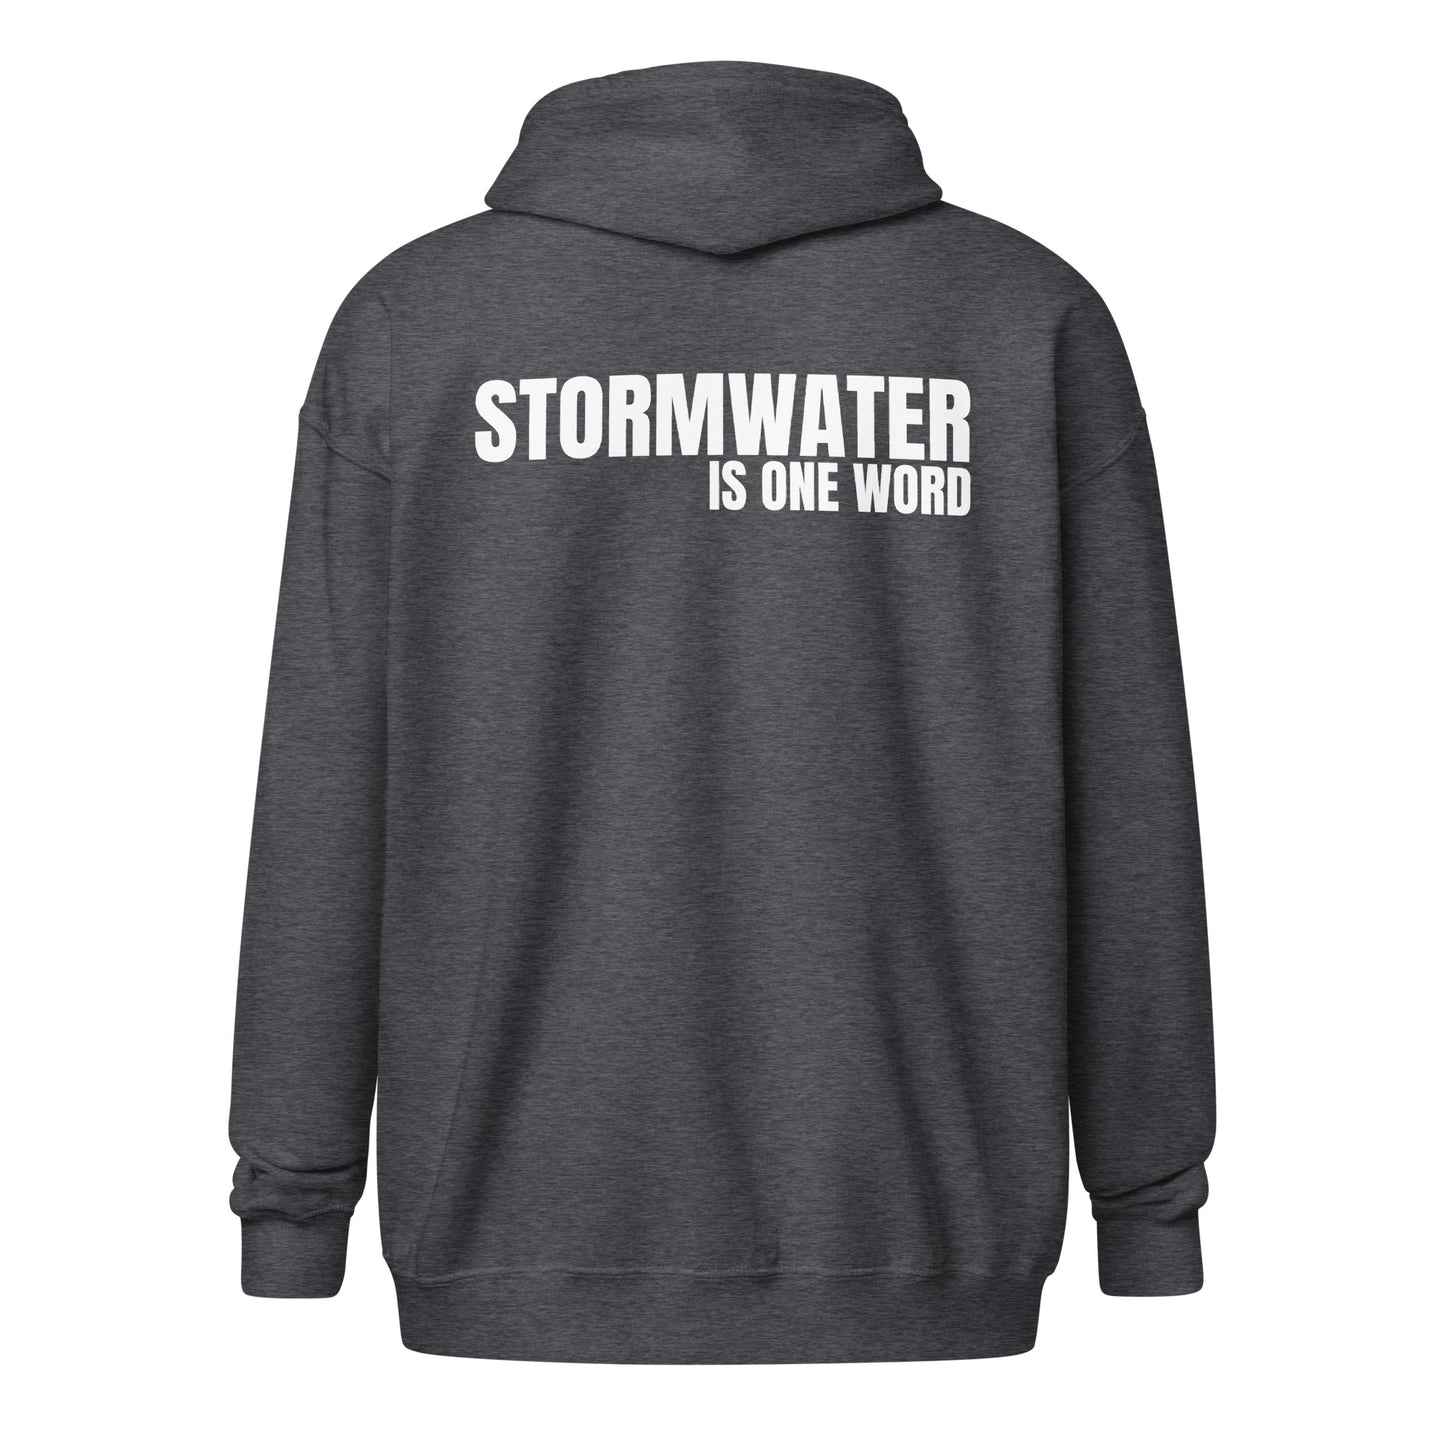 STORMWATER is One Word (back) - Unisex heavy blend zip hoodie